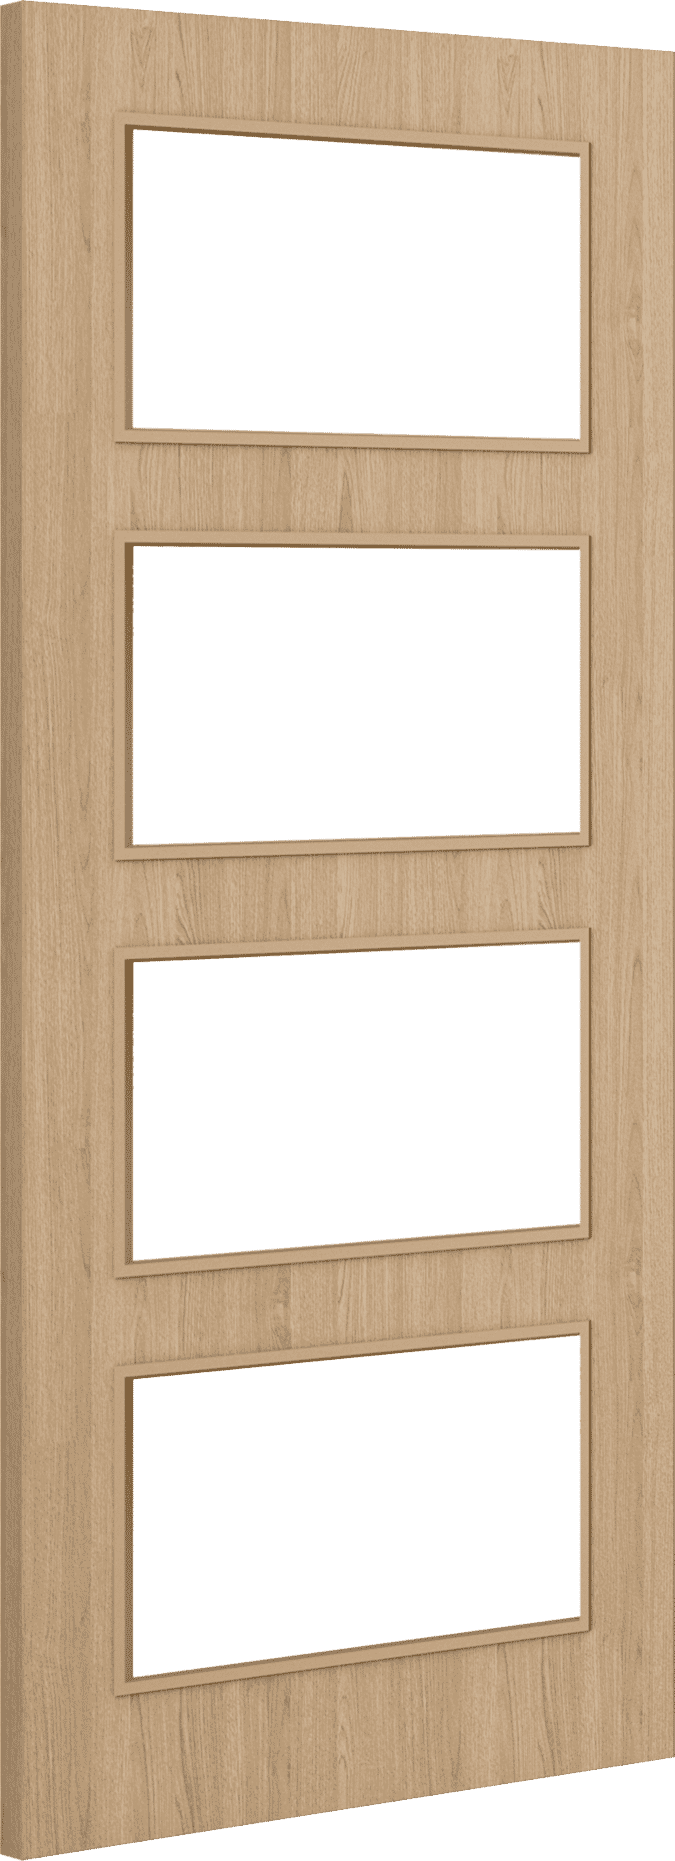 2040mm x 626mm x 44mm Architectural Oak 04 Clear Glazed - Prefinished FD30 Fire Door Blank